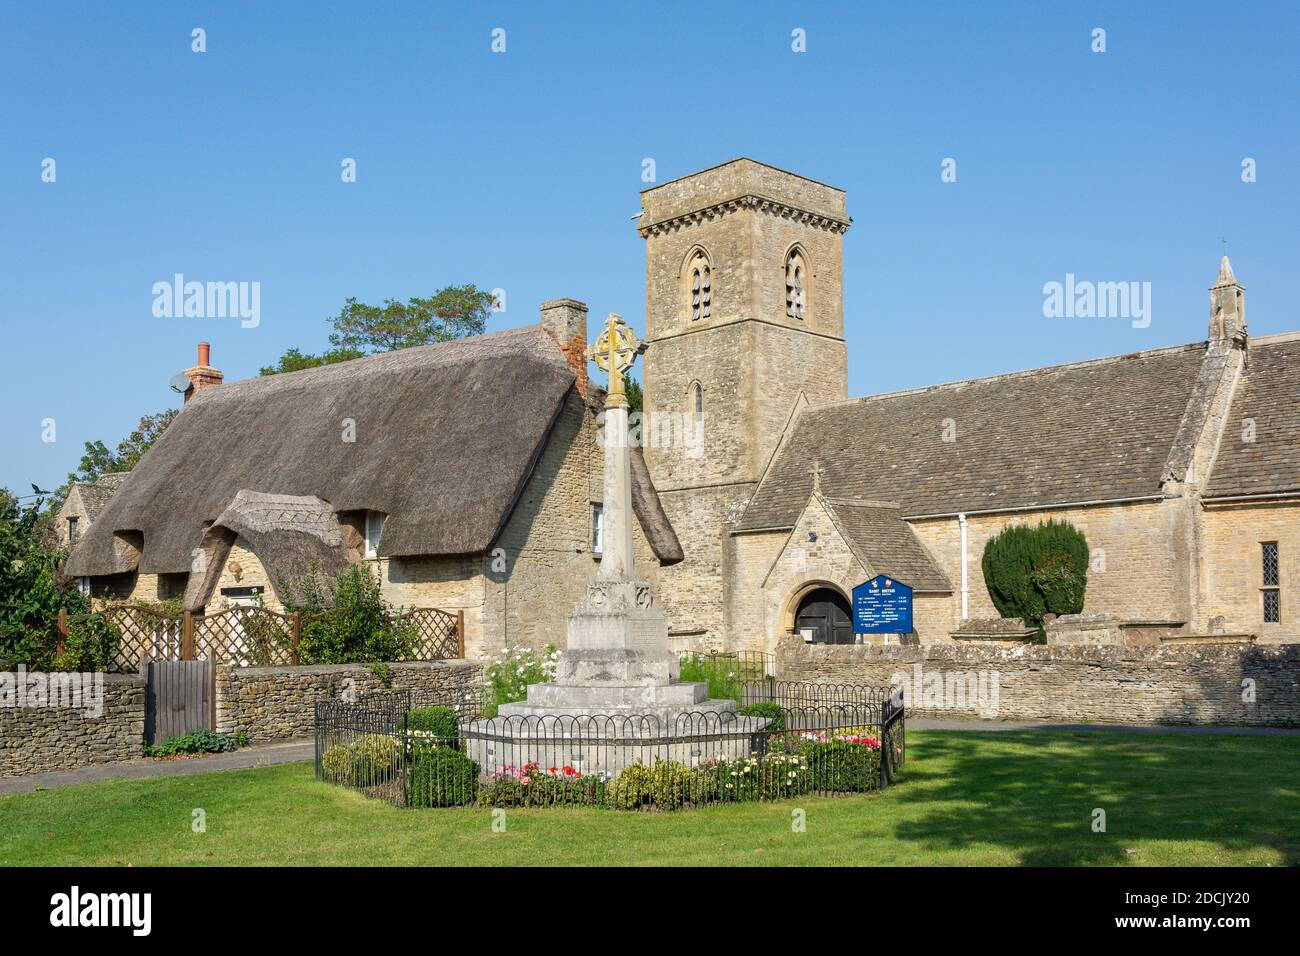 St Britius Kirche, Reetgedeckte Hütte und war Memorial, Station Road, Brize Norton, Oxfordshire, England, Vereinigtes Königreich Stockfoto